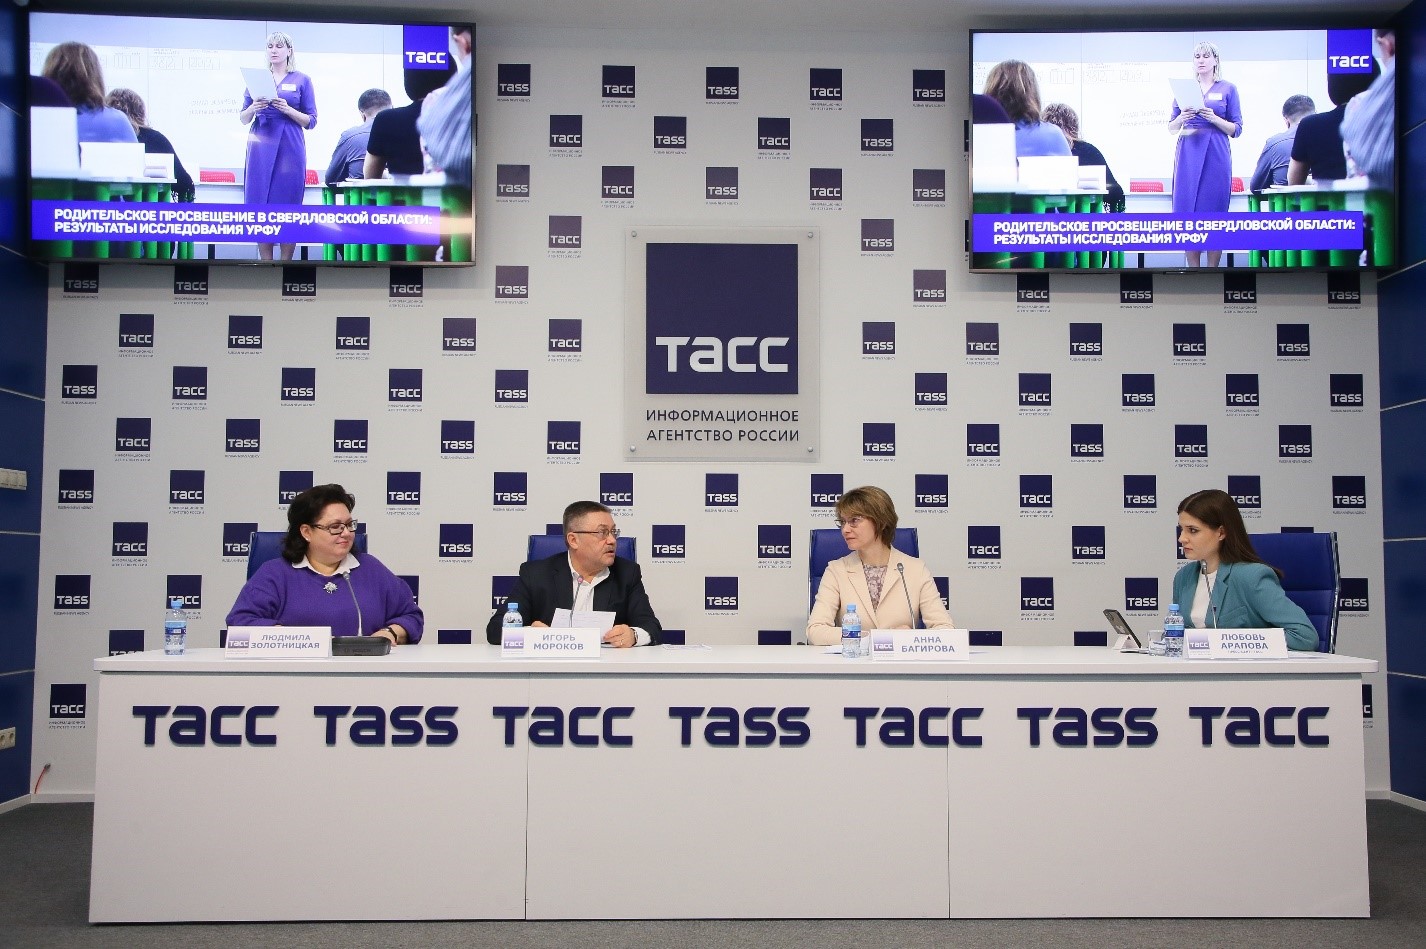 В Екатеринбурге прошла пресс-конференция ТАСС, посвященная результатам исследования родительского просвещения